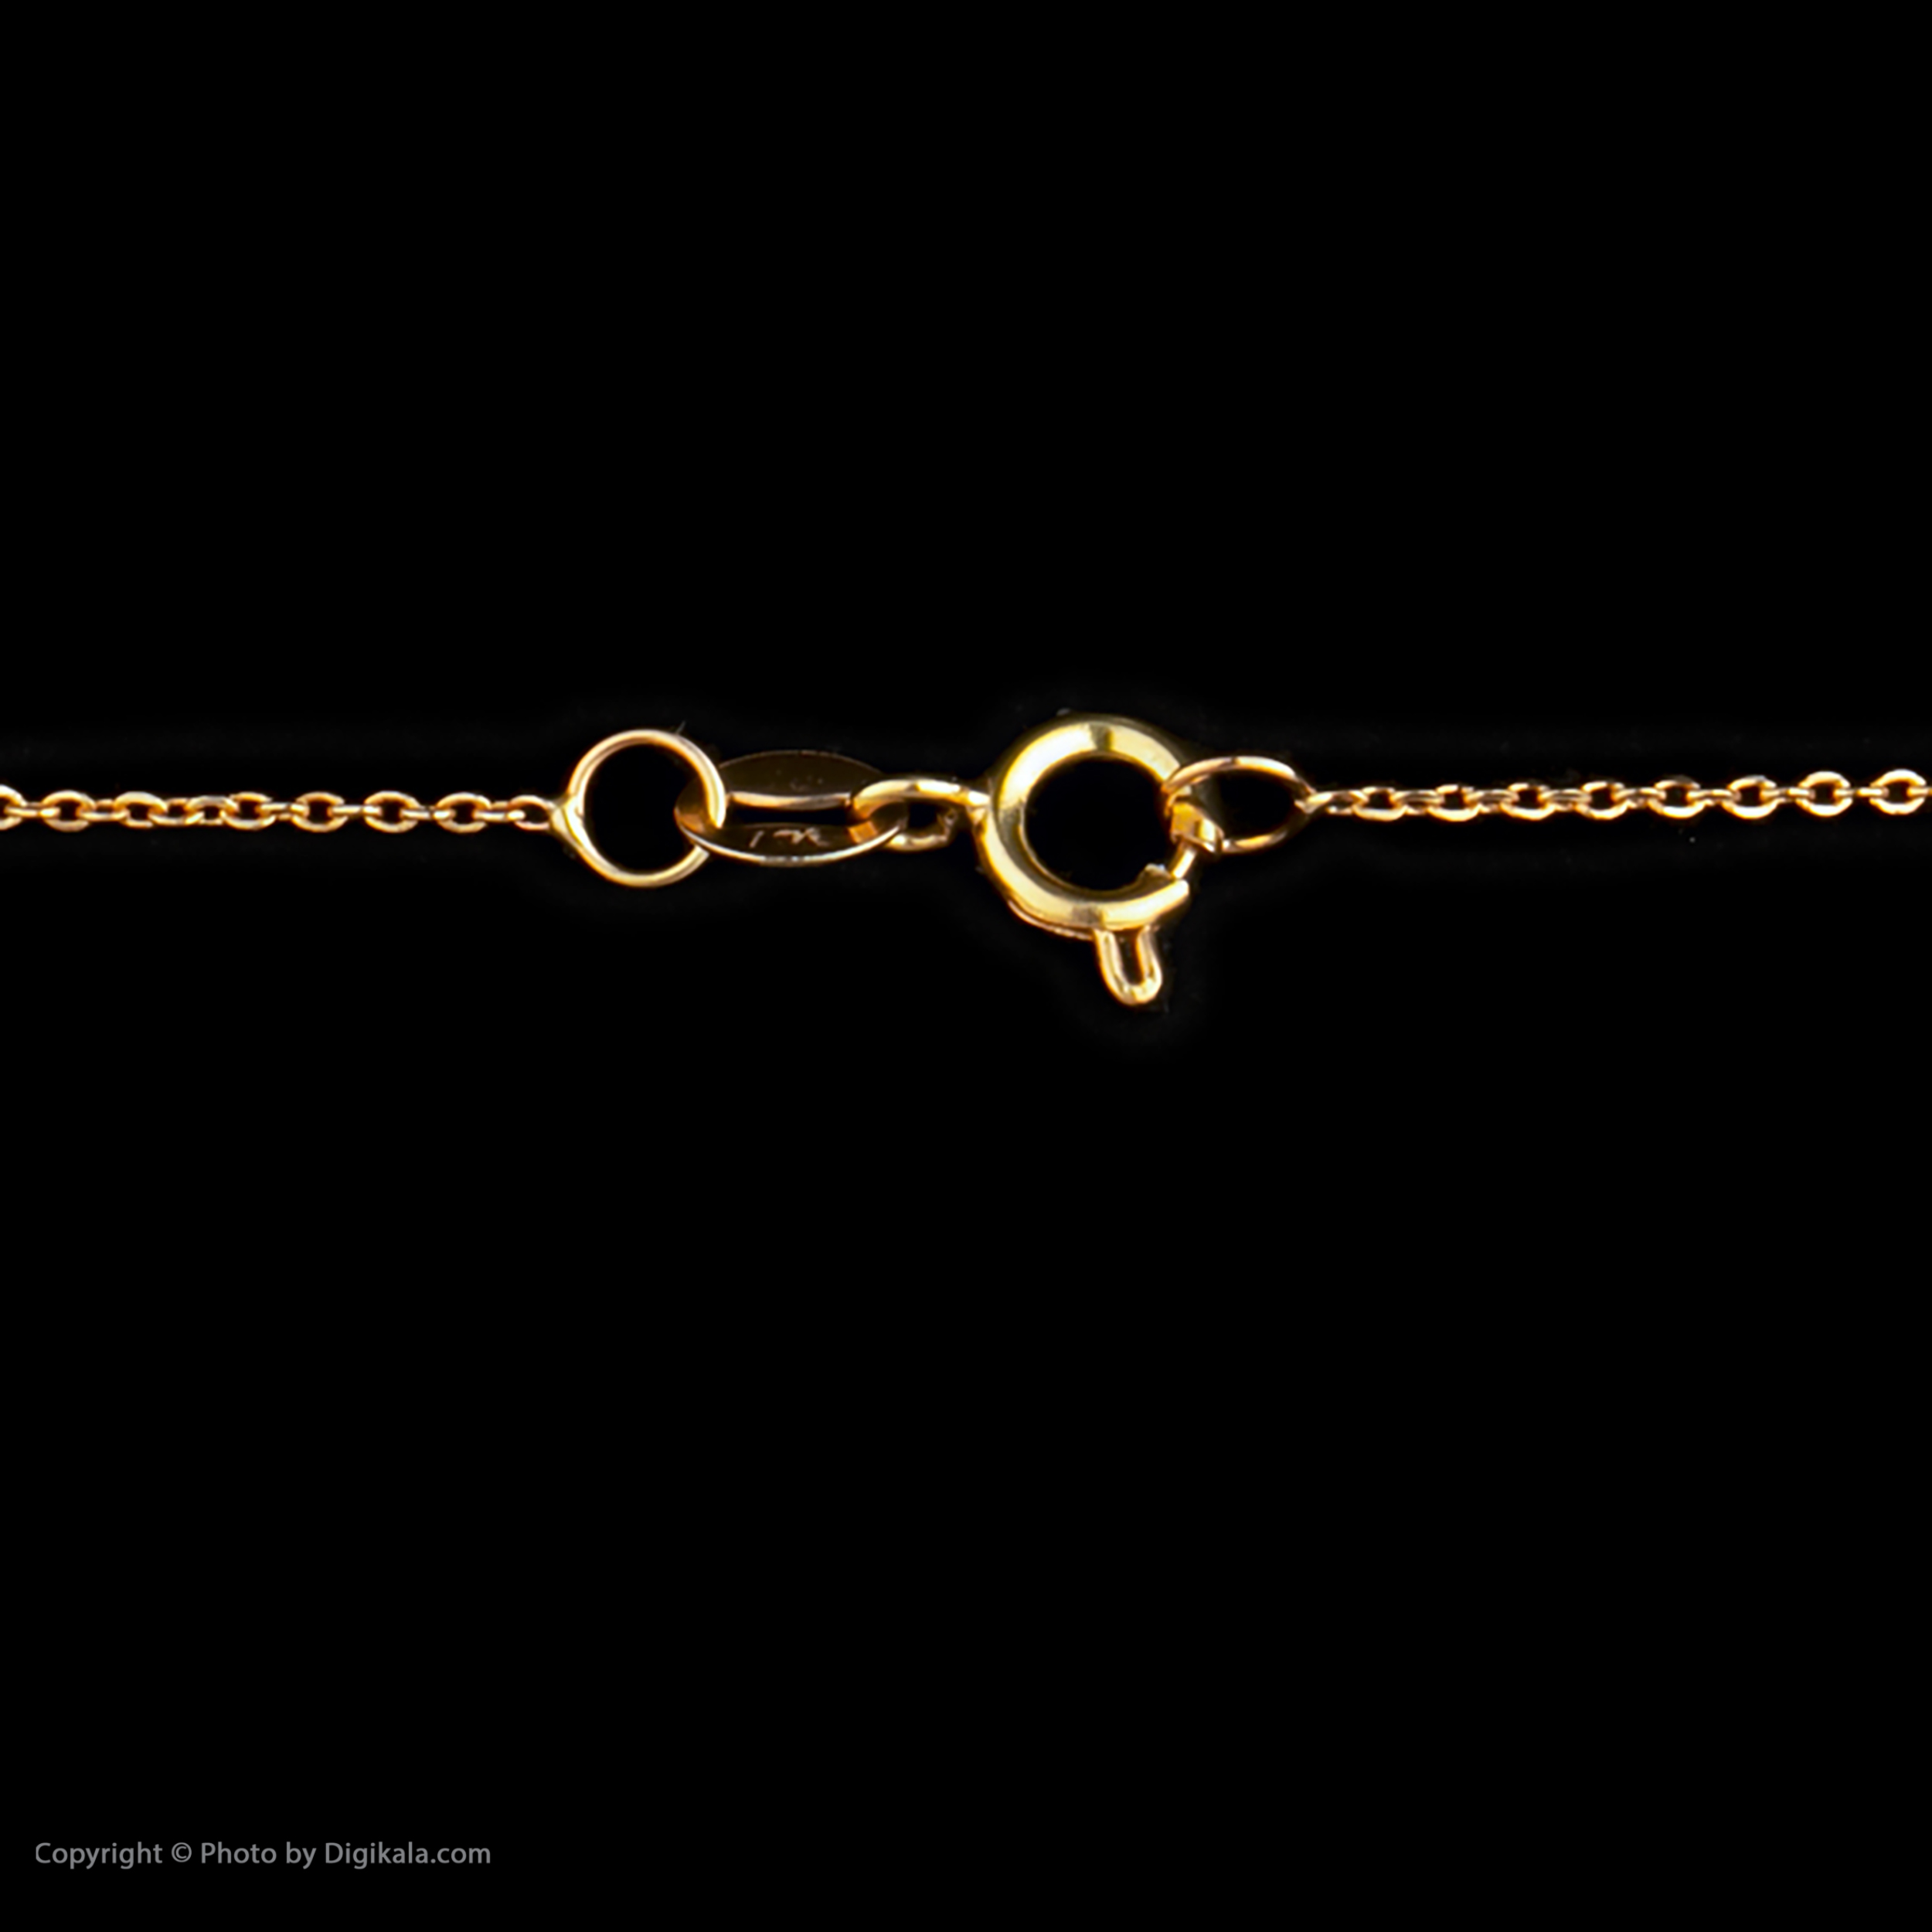 گردنبند طلا 18 عیار زنانه مایا ماهک مدل MM1105 طرح قلب 3 بعدی -  - 4